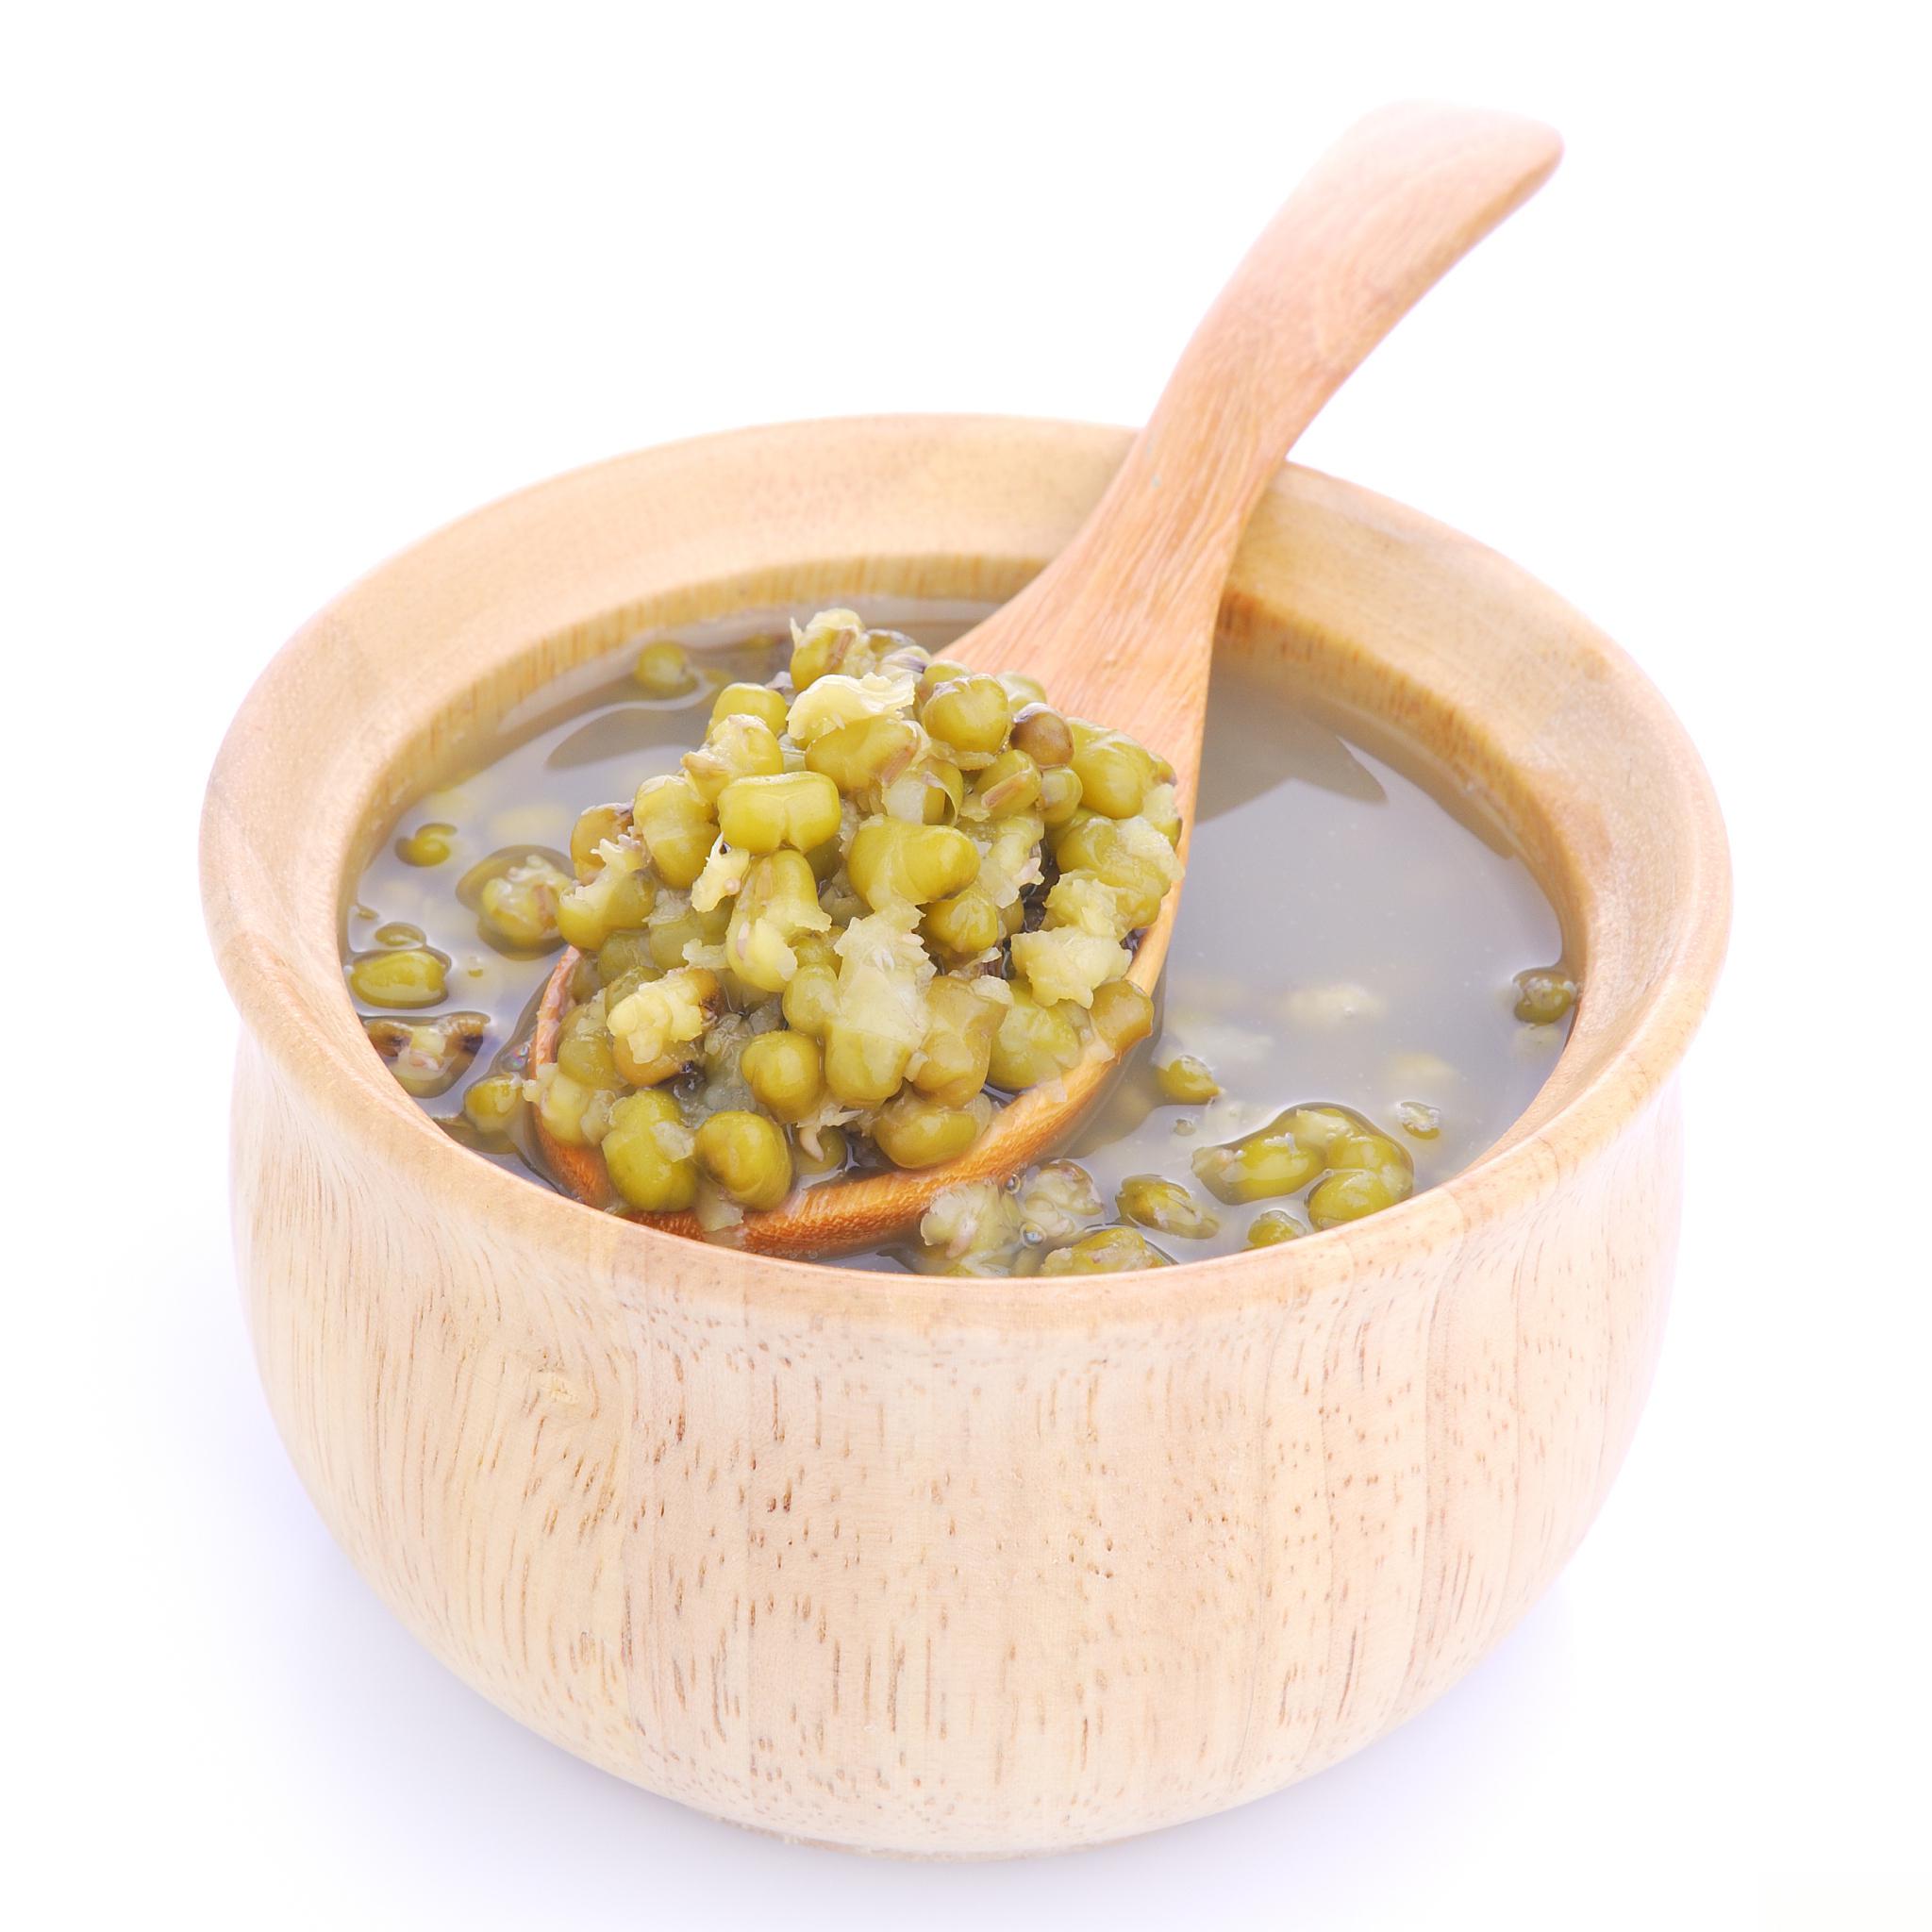 绿豆汤属于养生保健食品,尤其是在夏季,它具有止渴消暑的功效,同时也